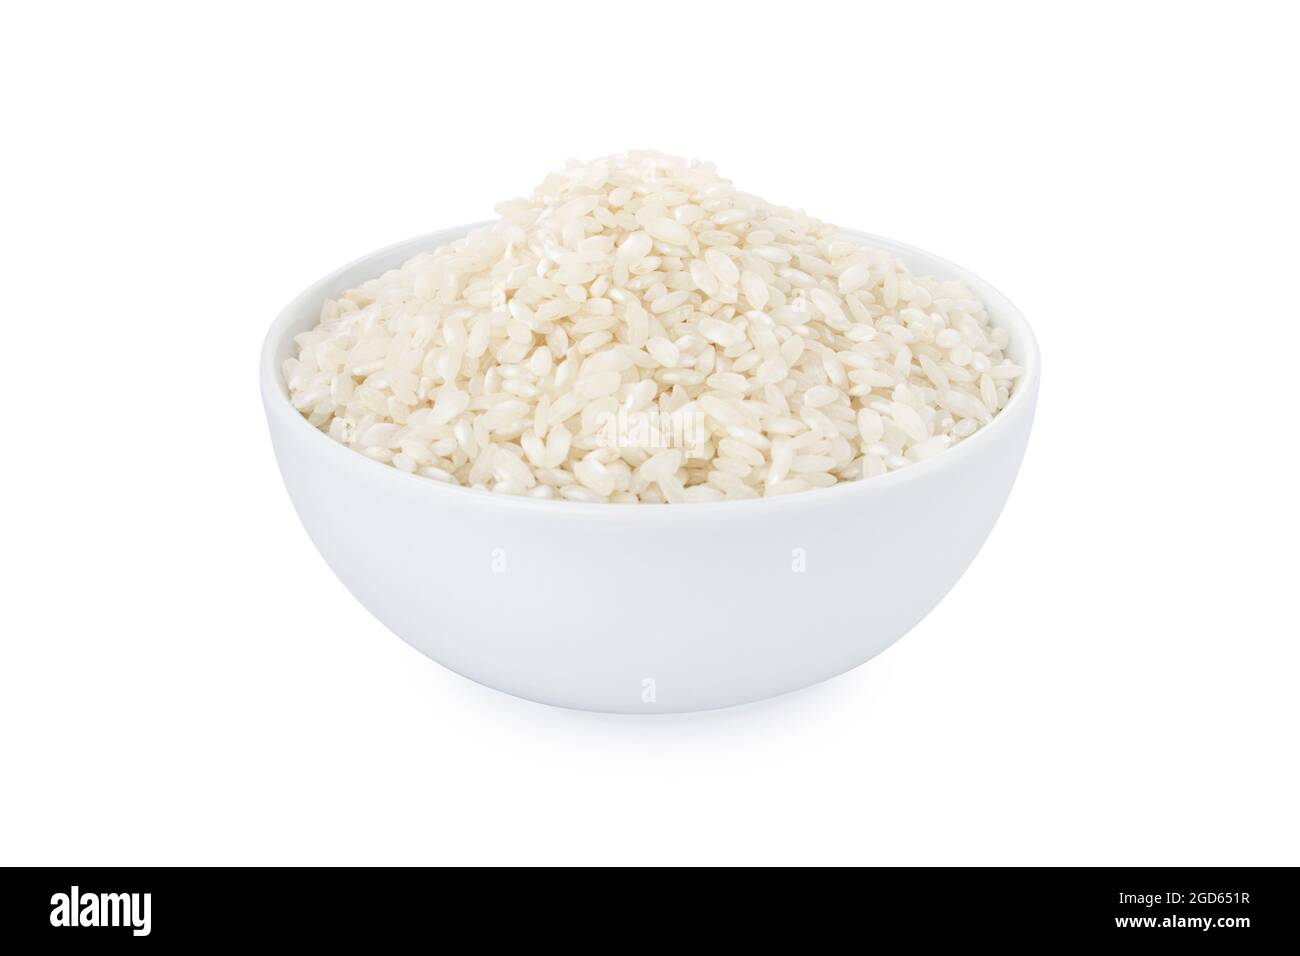 Baldo rice, baldo rice in white bowl, on white background Stock Photo